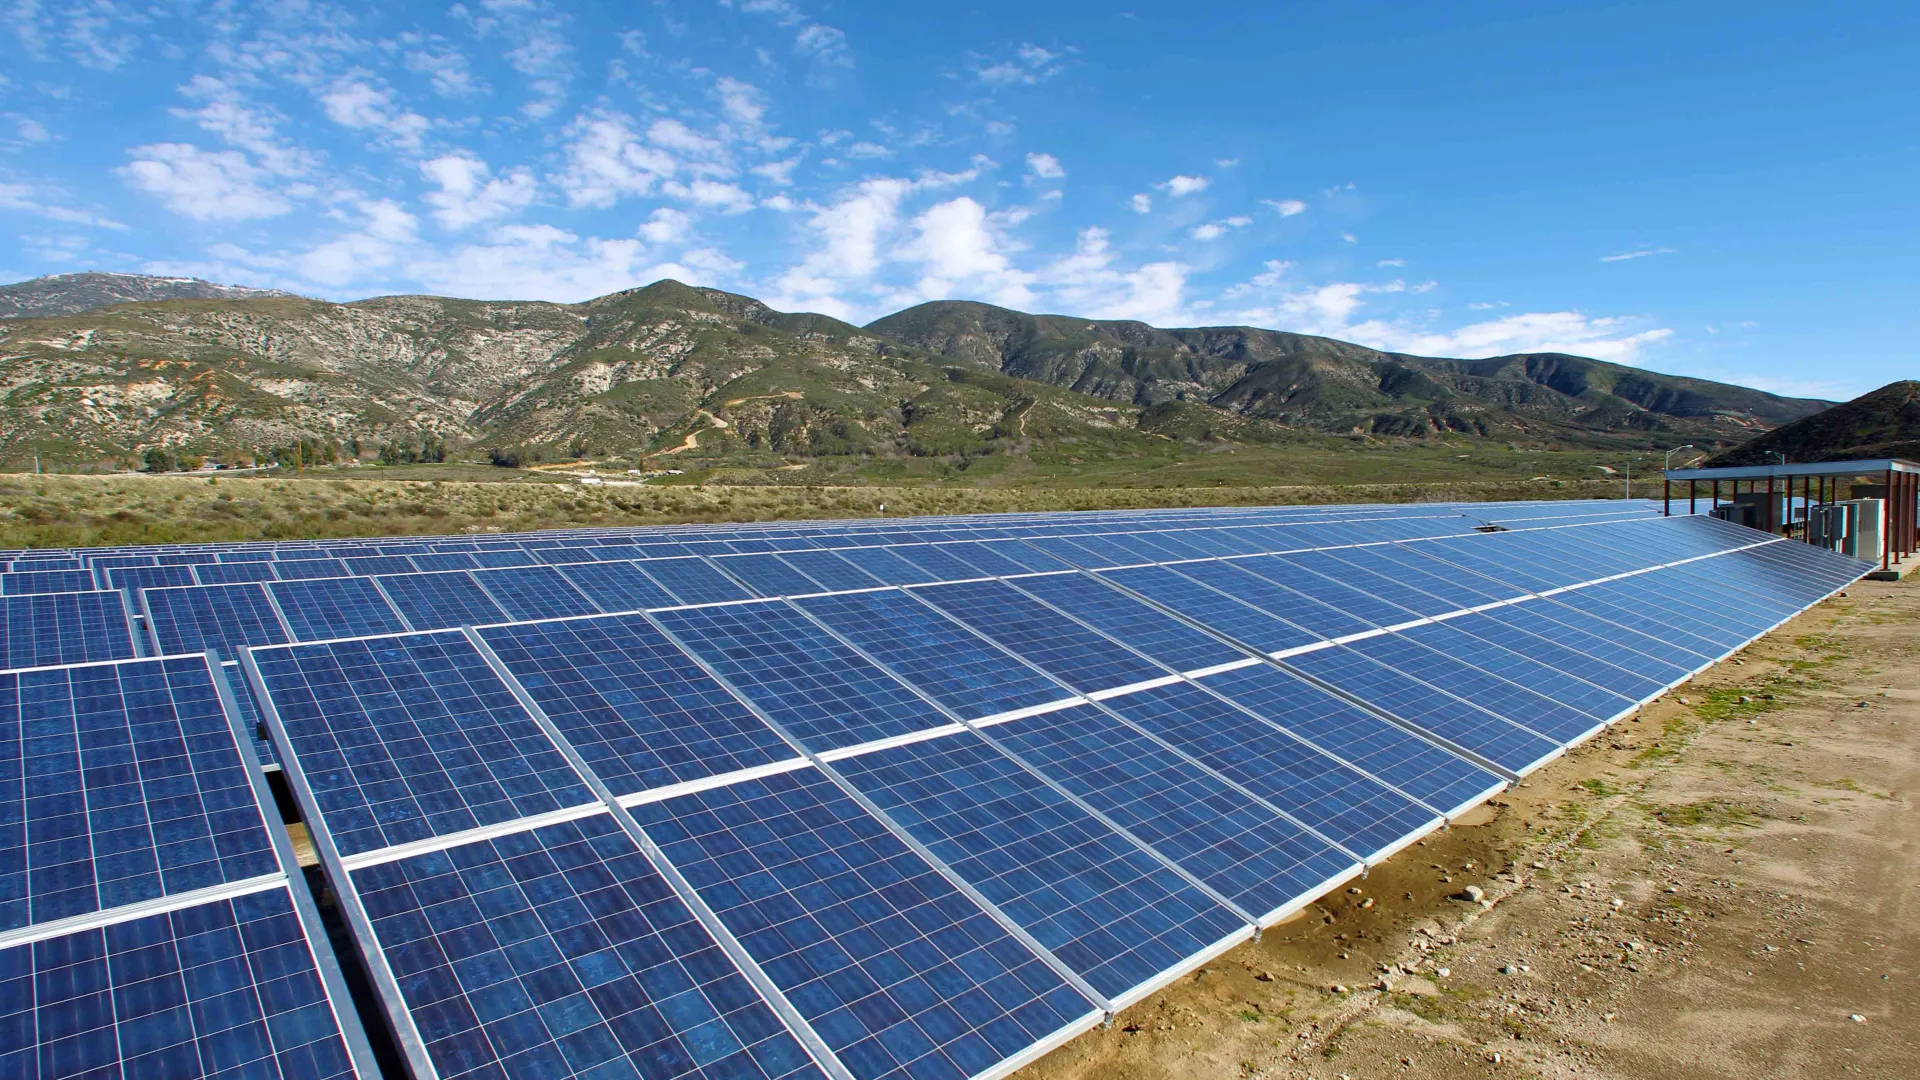 The solar panel array at Cal State San Bernardino. 